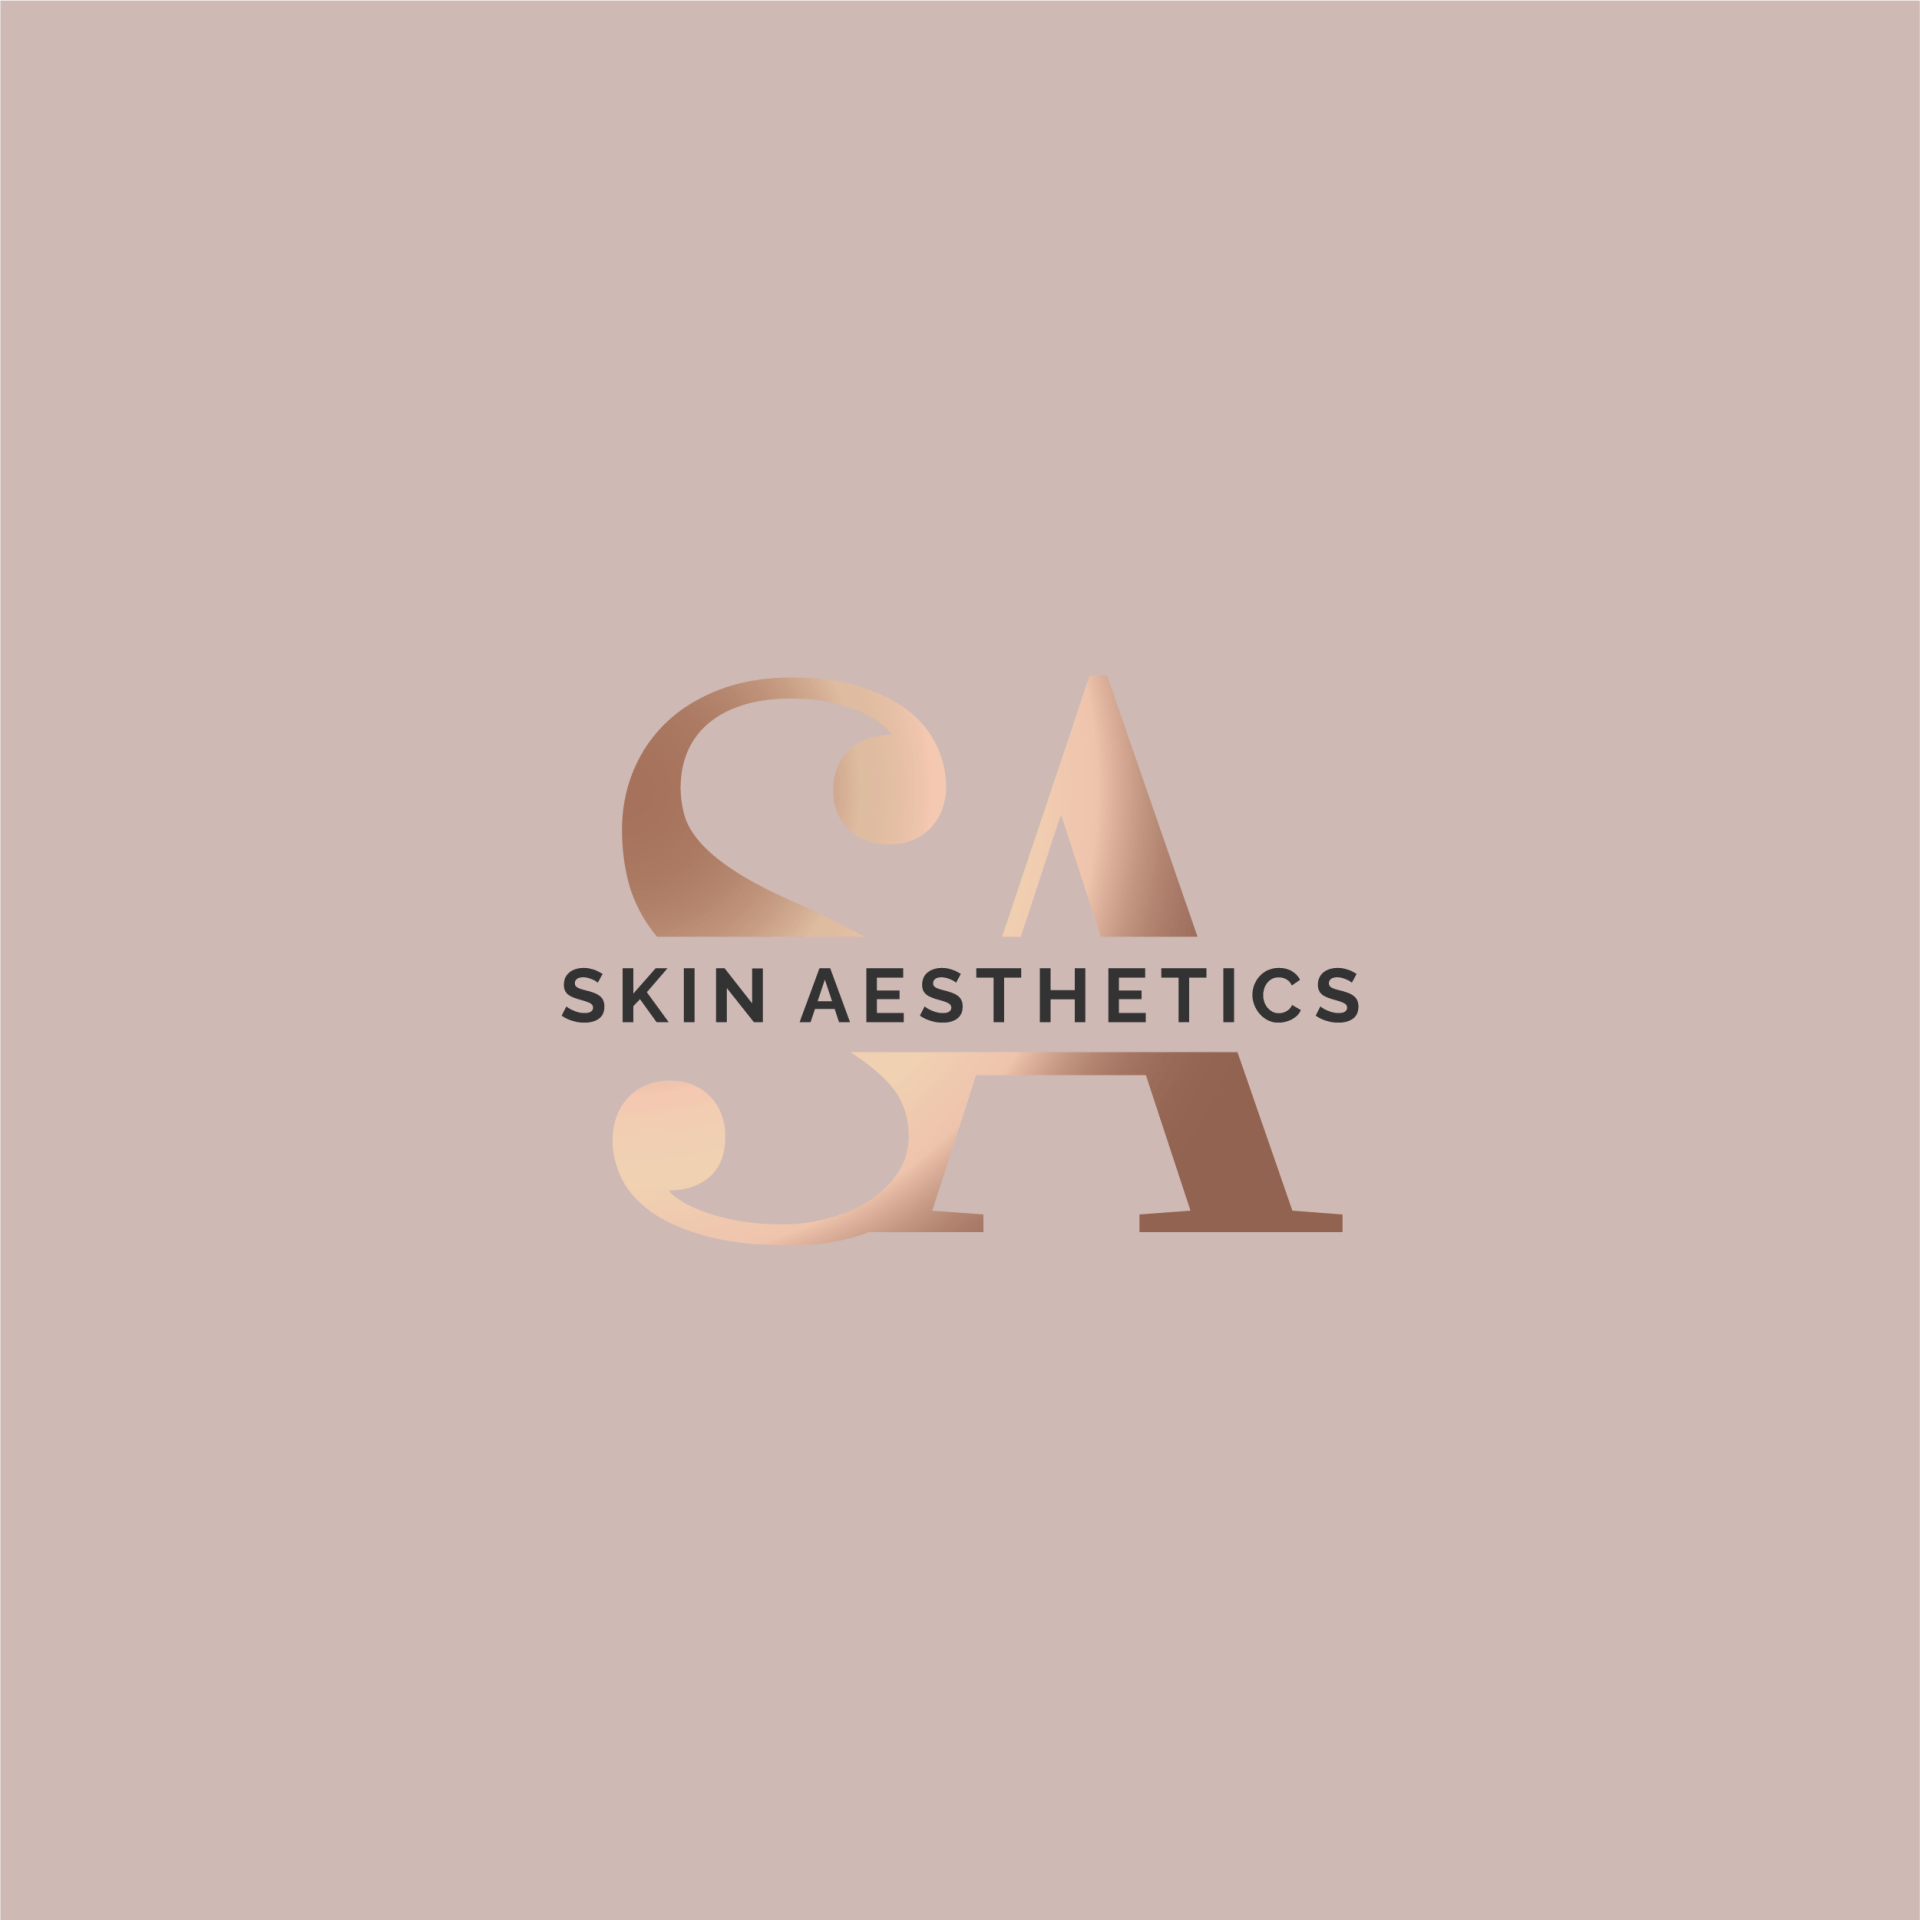 Skin Aesthetics - Dr Qian Xu